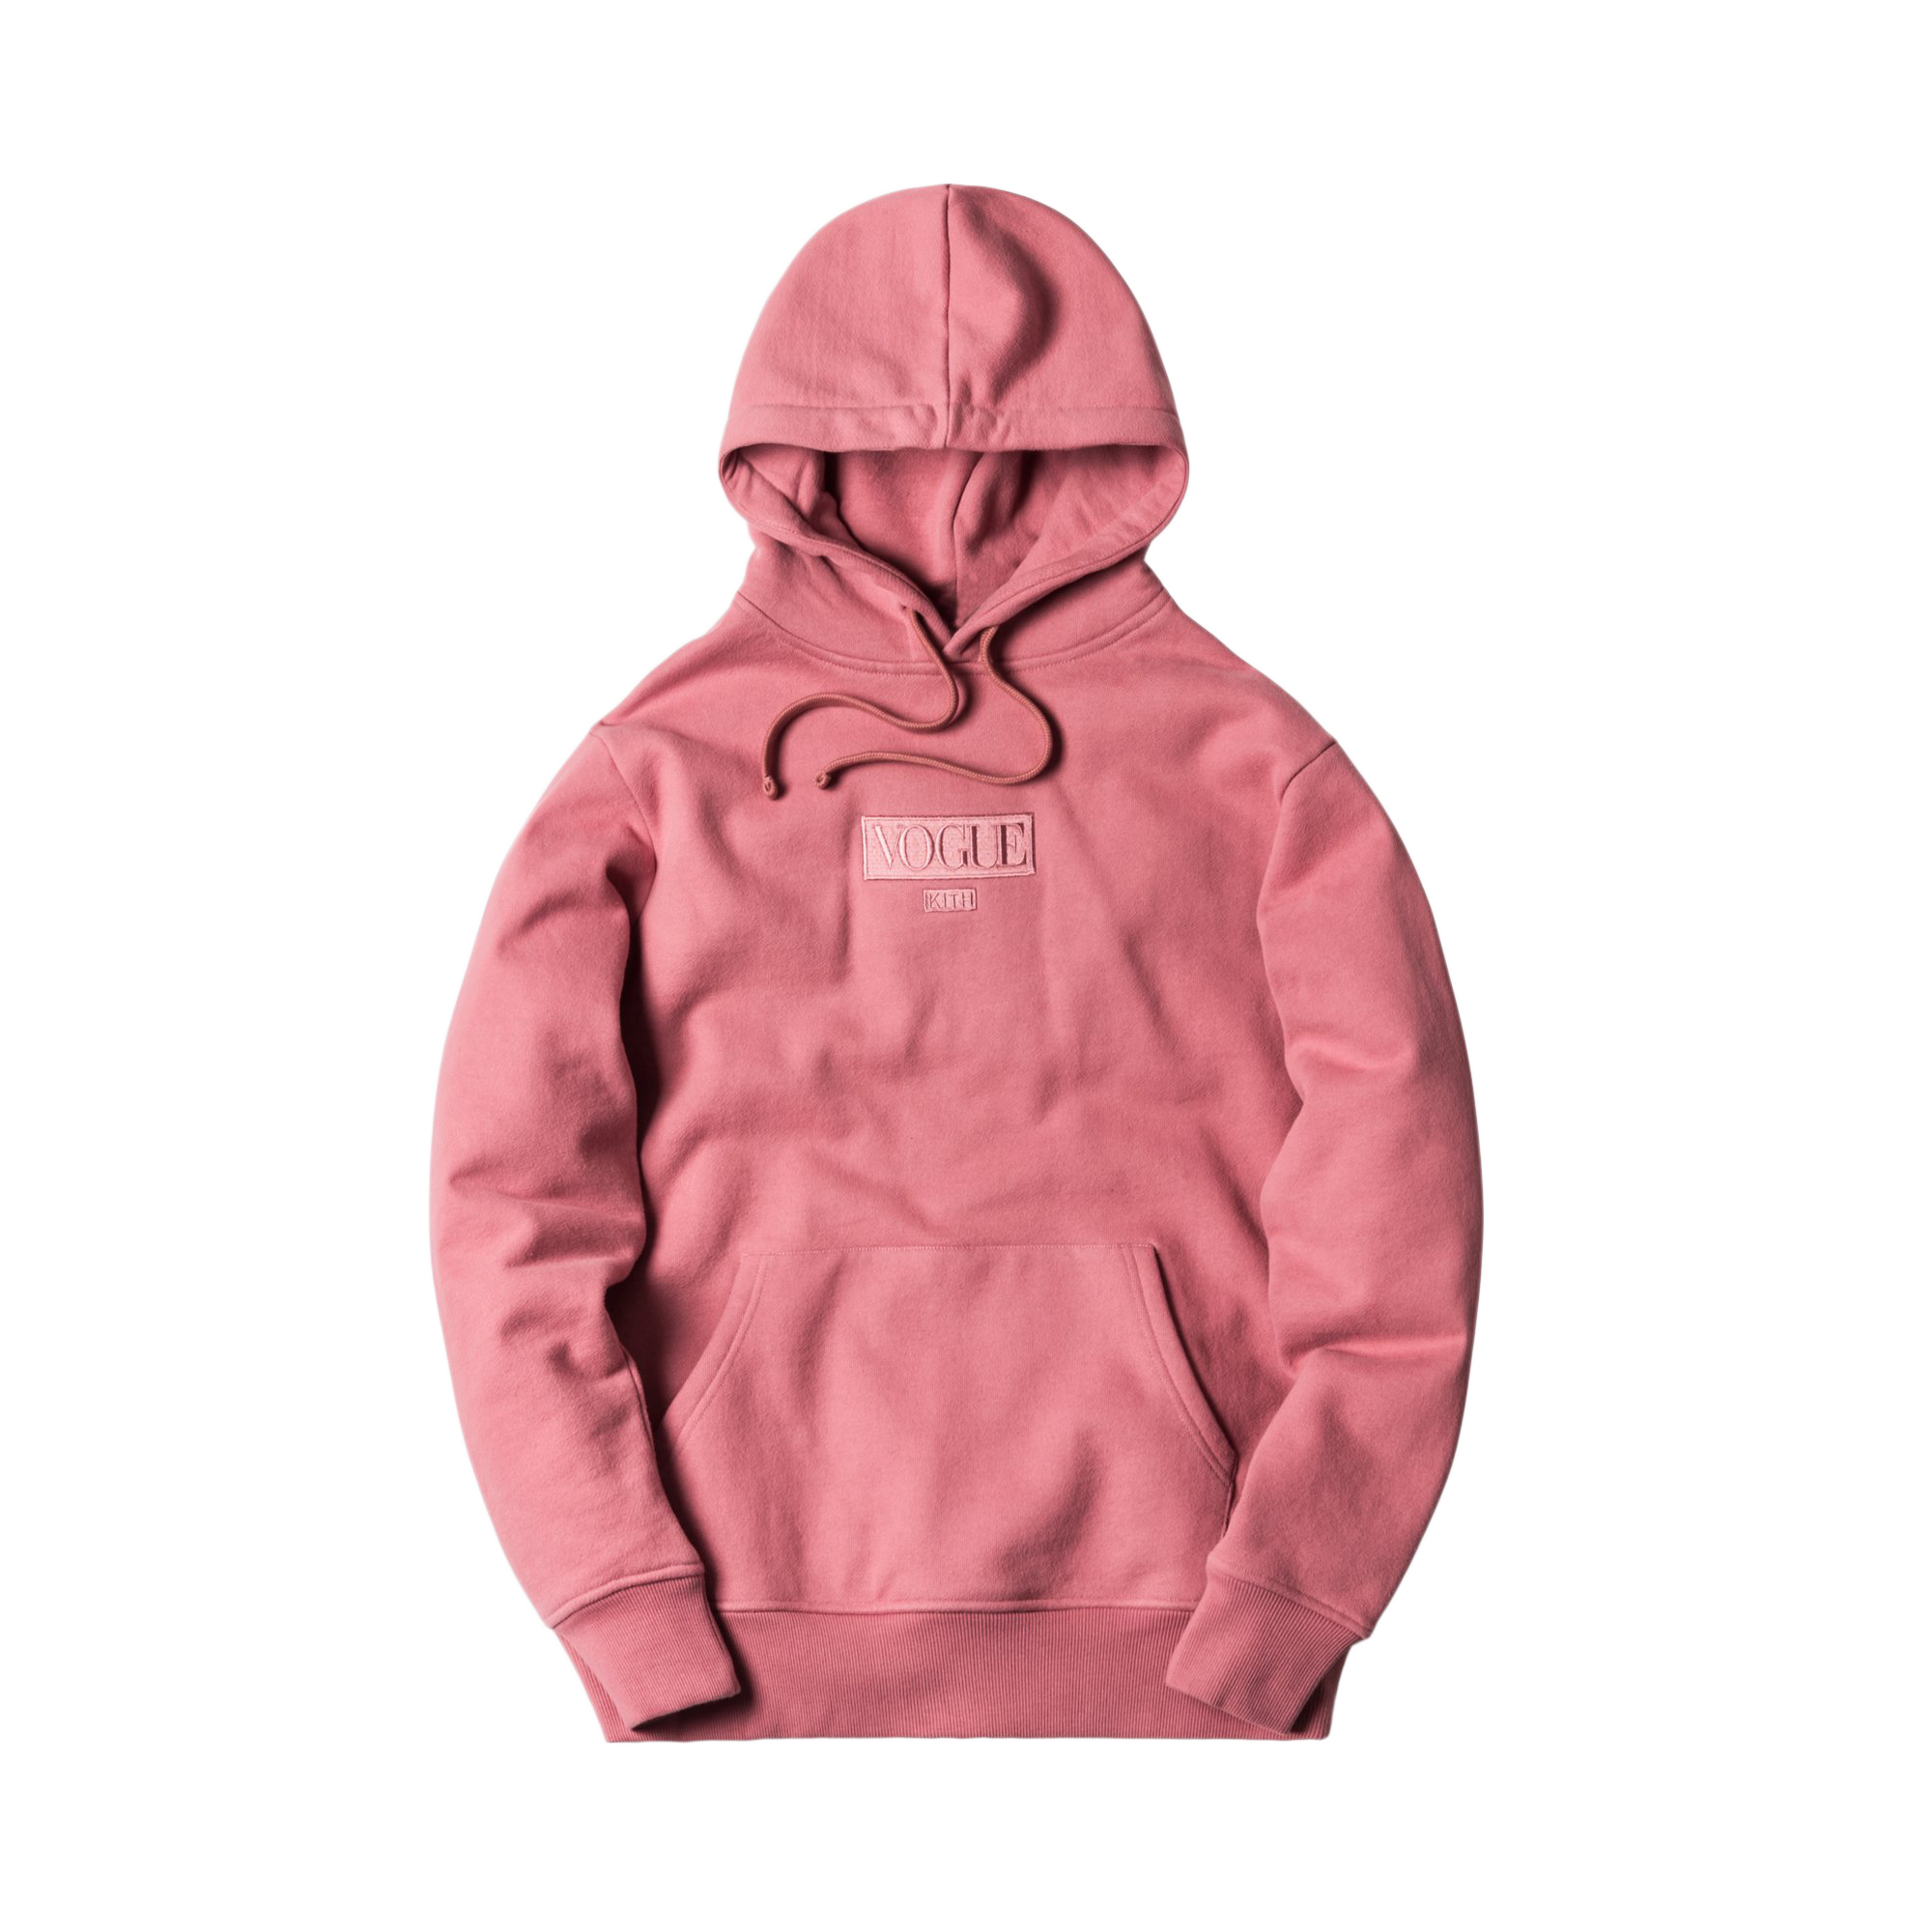 Kith treats rose hoodieパーカー